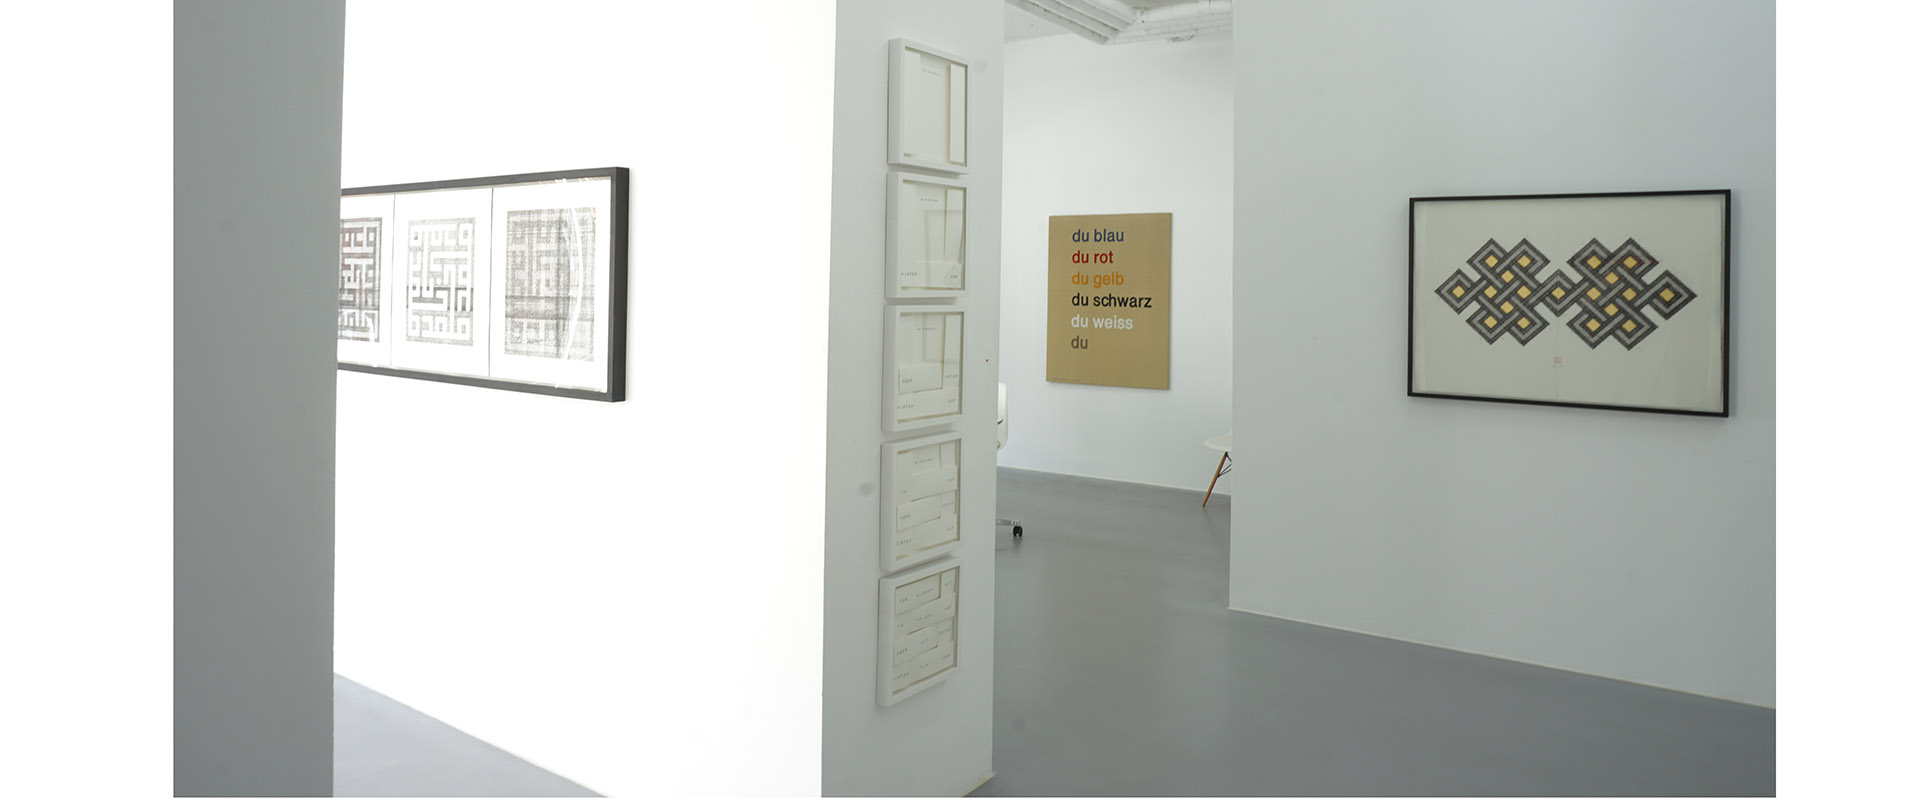 Ausstellungsansicht "AM ANFANG WAR DAS WORT AM. Sprache in Wort und Bild", Galerie Renate Bender 2018